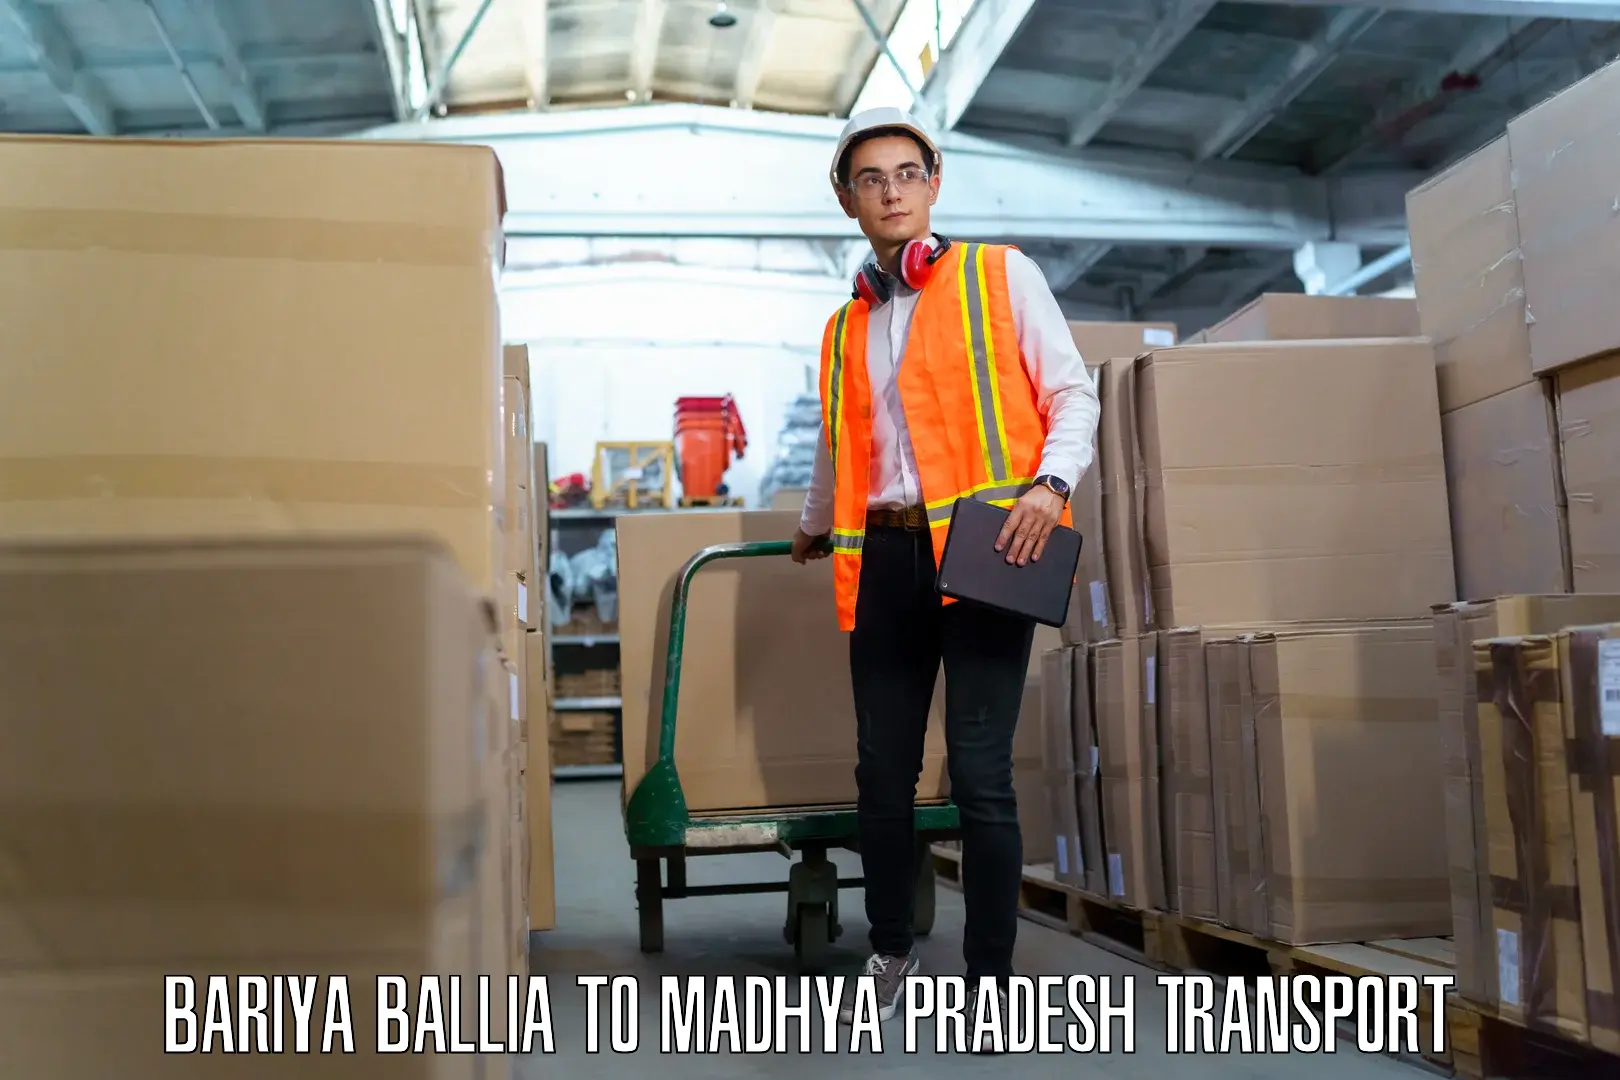 Furniture transport service Bariya Ballia to Raipur Karchuliyan